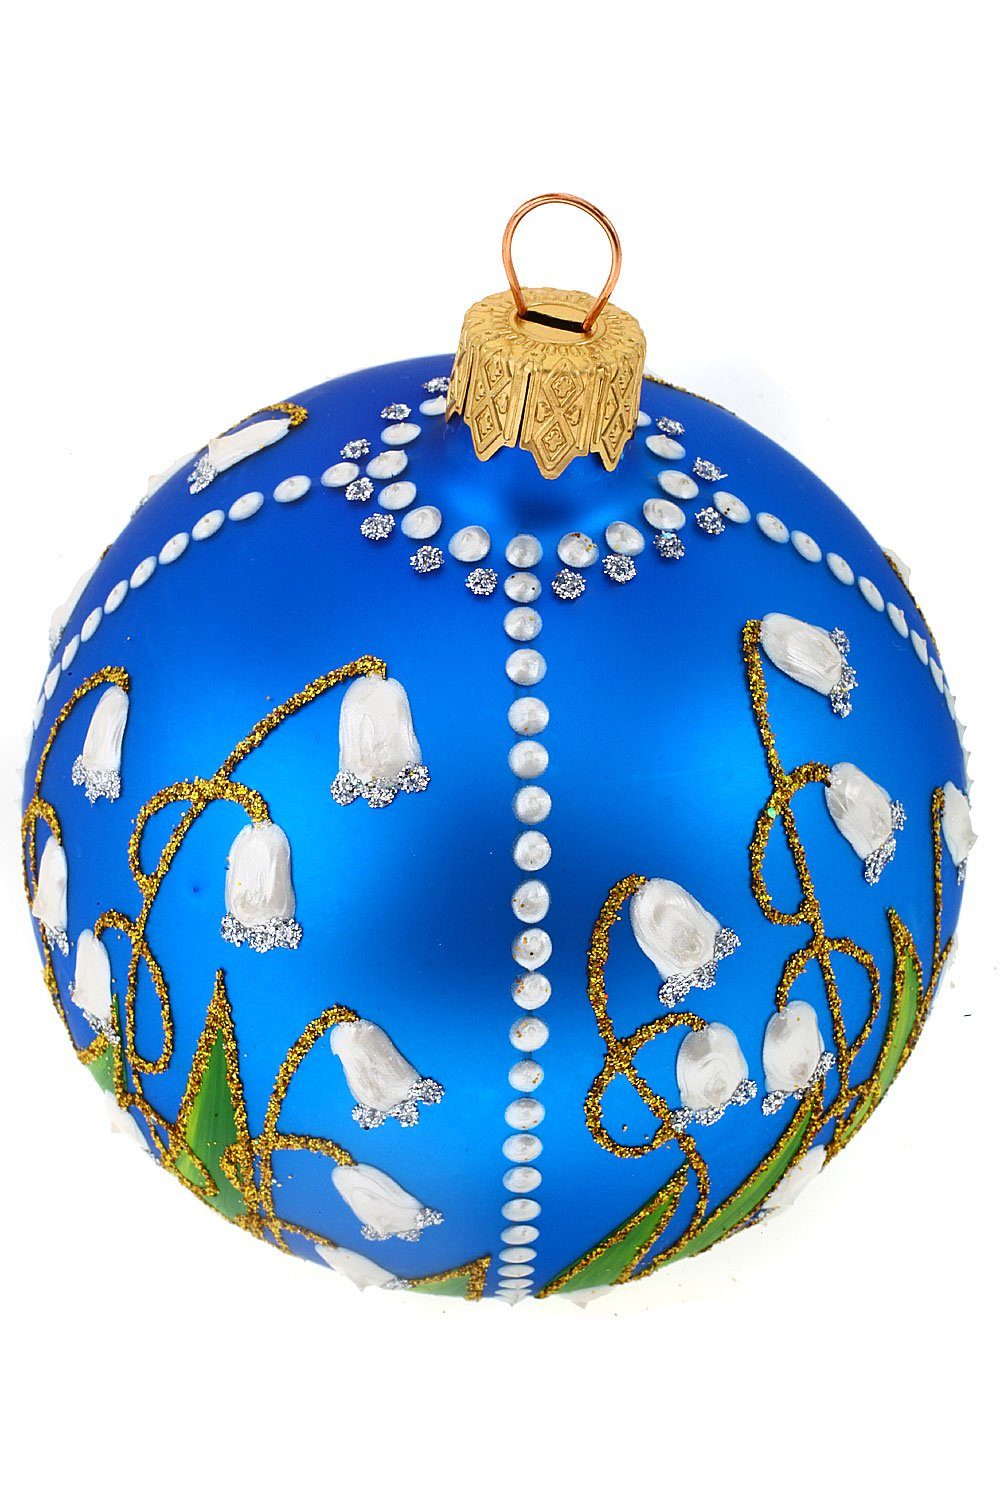 Christbaumkugel Weihnachtskontor blau, handdekoriert Weihnachtsbaumkugel - Hamburger mit Maiglöckchen mundgeblasen